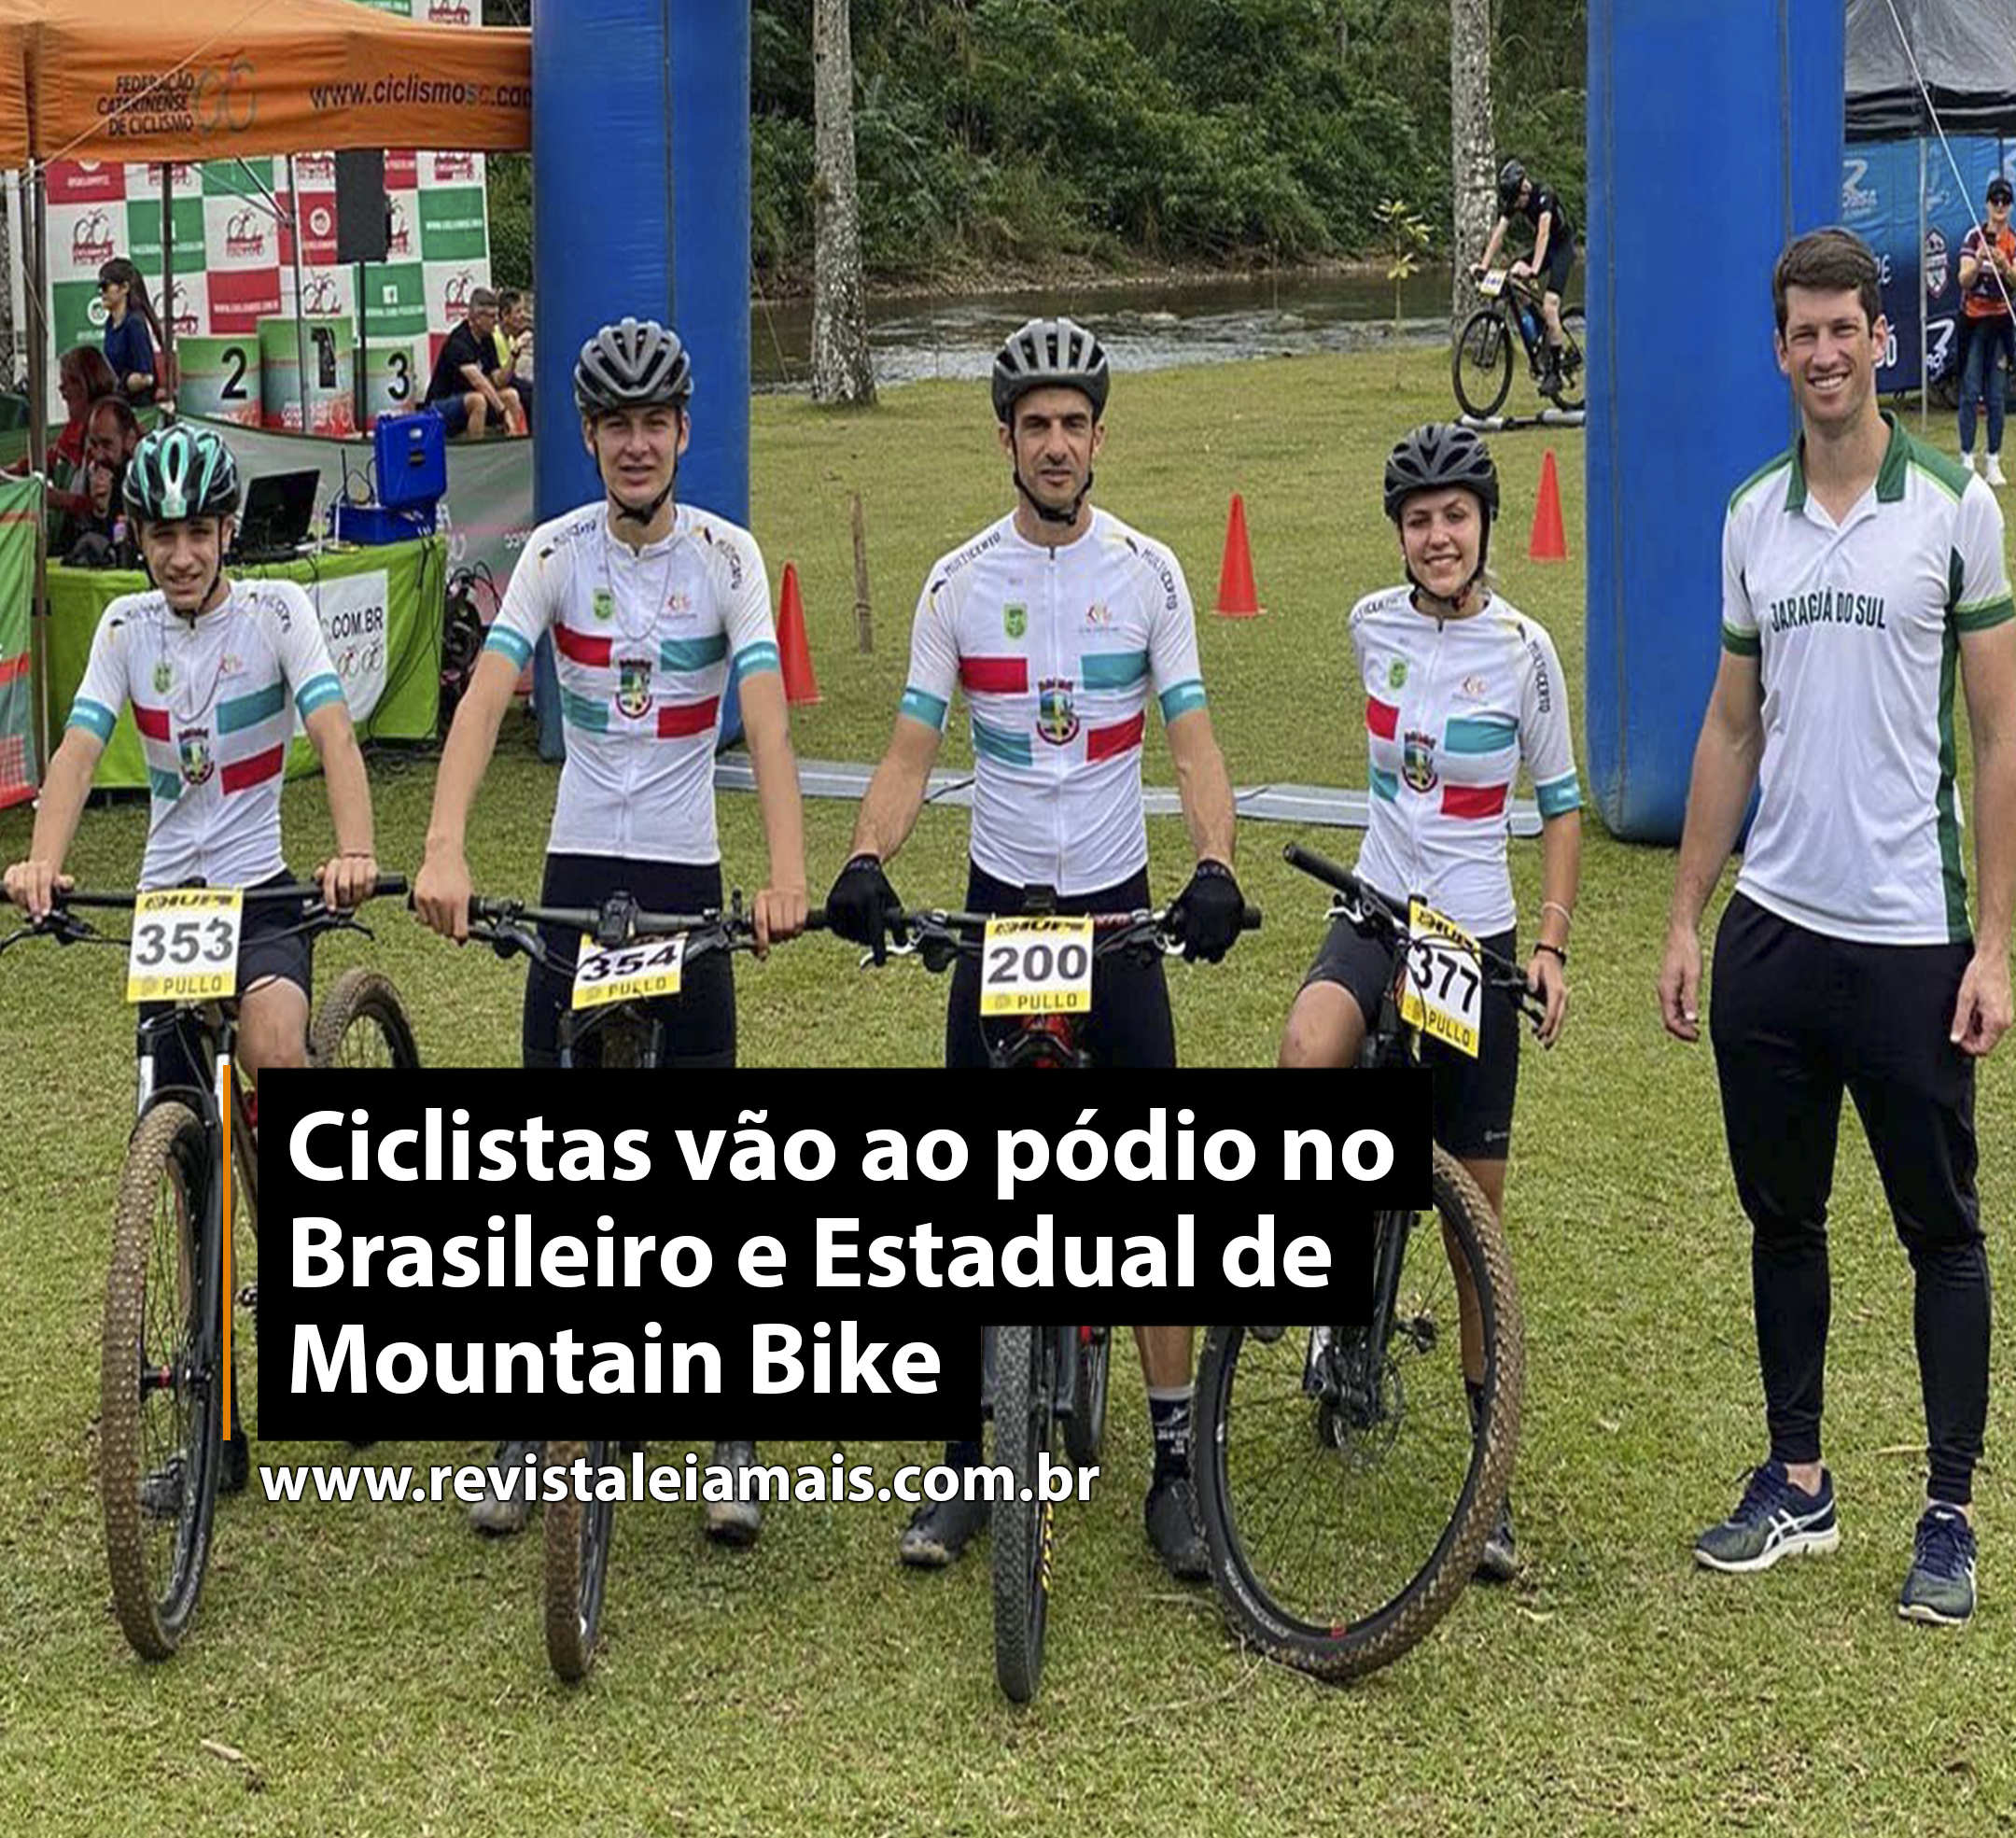 Ciclistas vão ao pódio no Brasileiro e Estadual de Mountain Bike